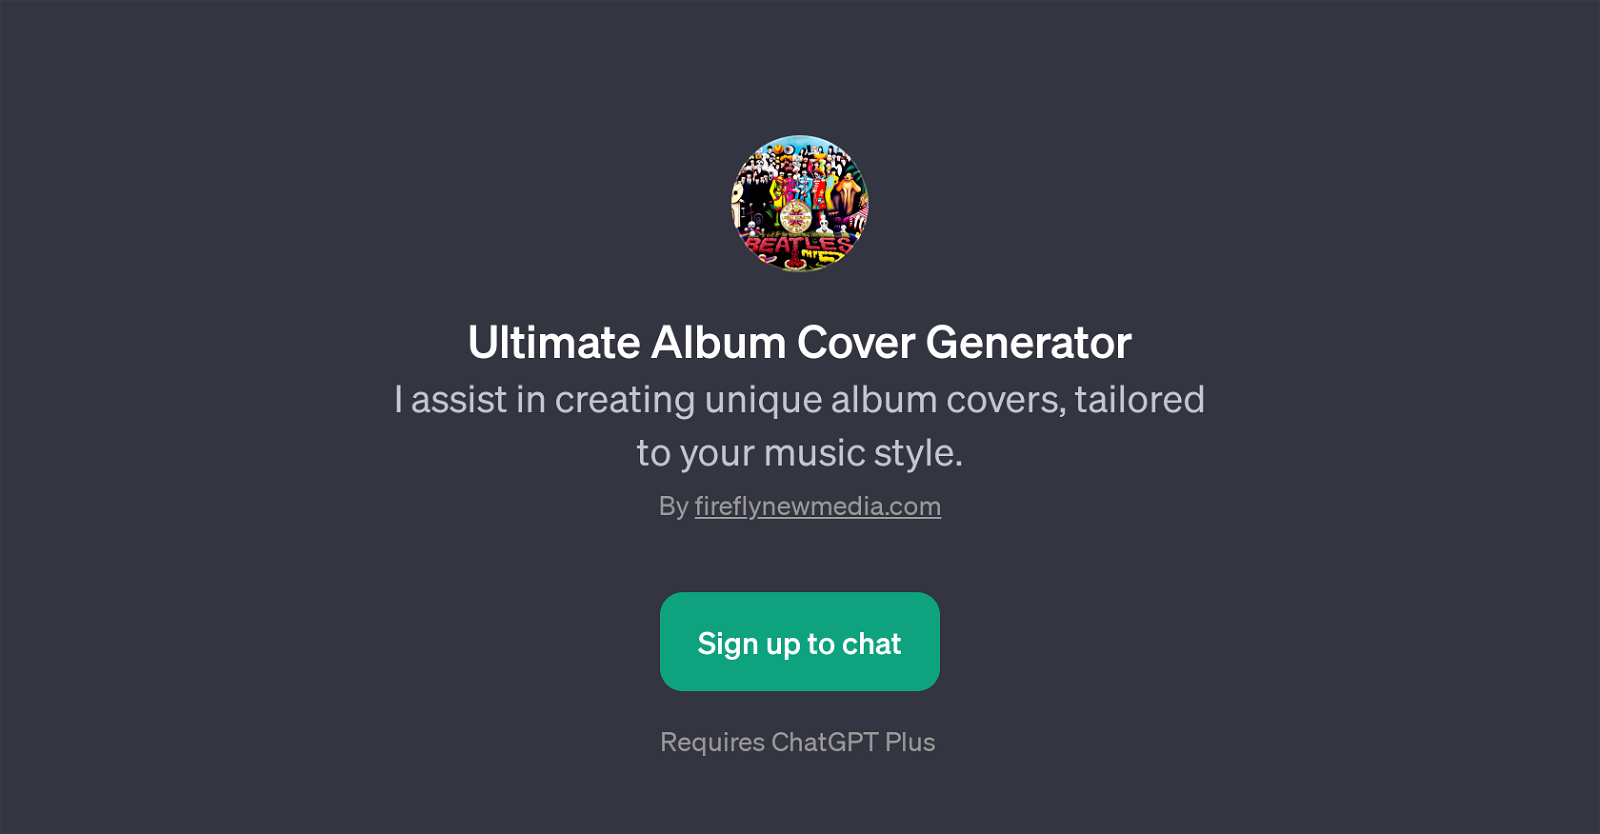 Ultimate Album Cover Generator website